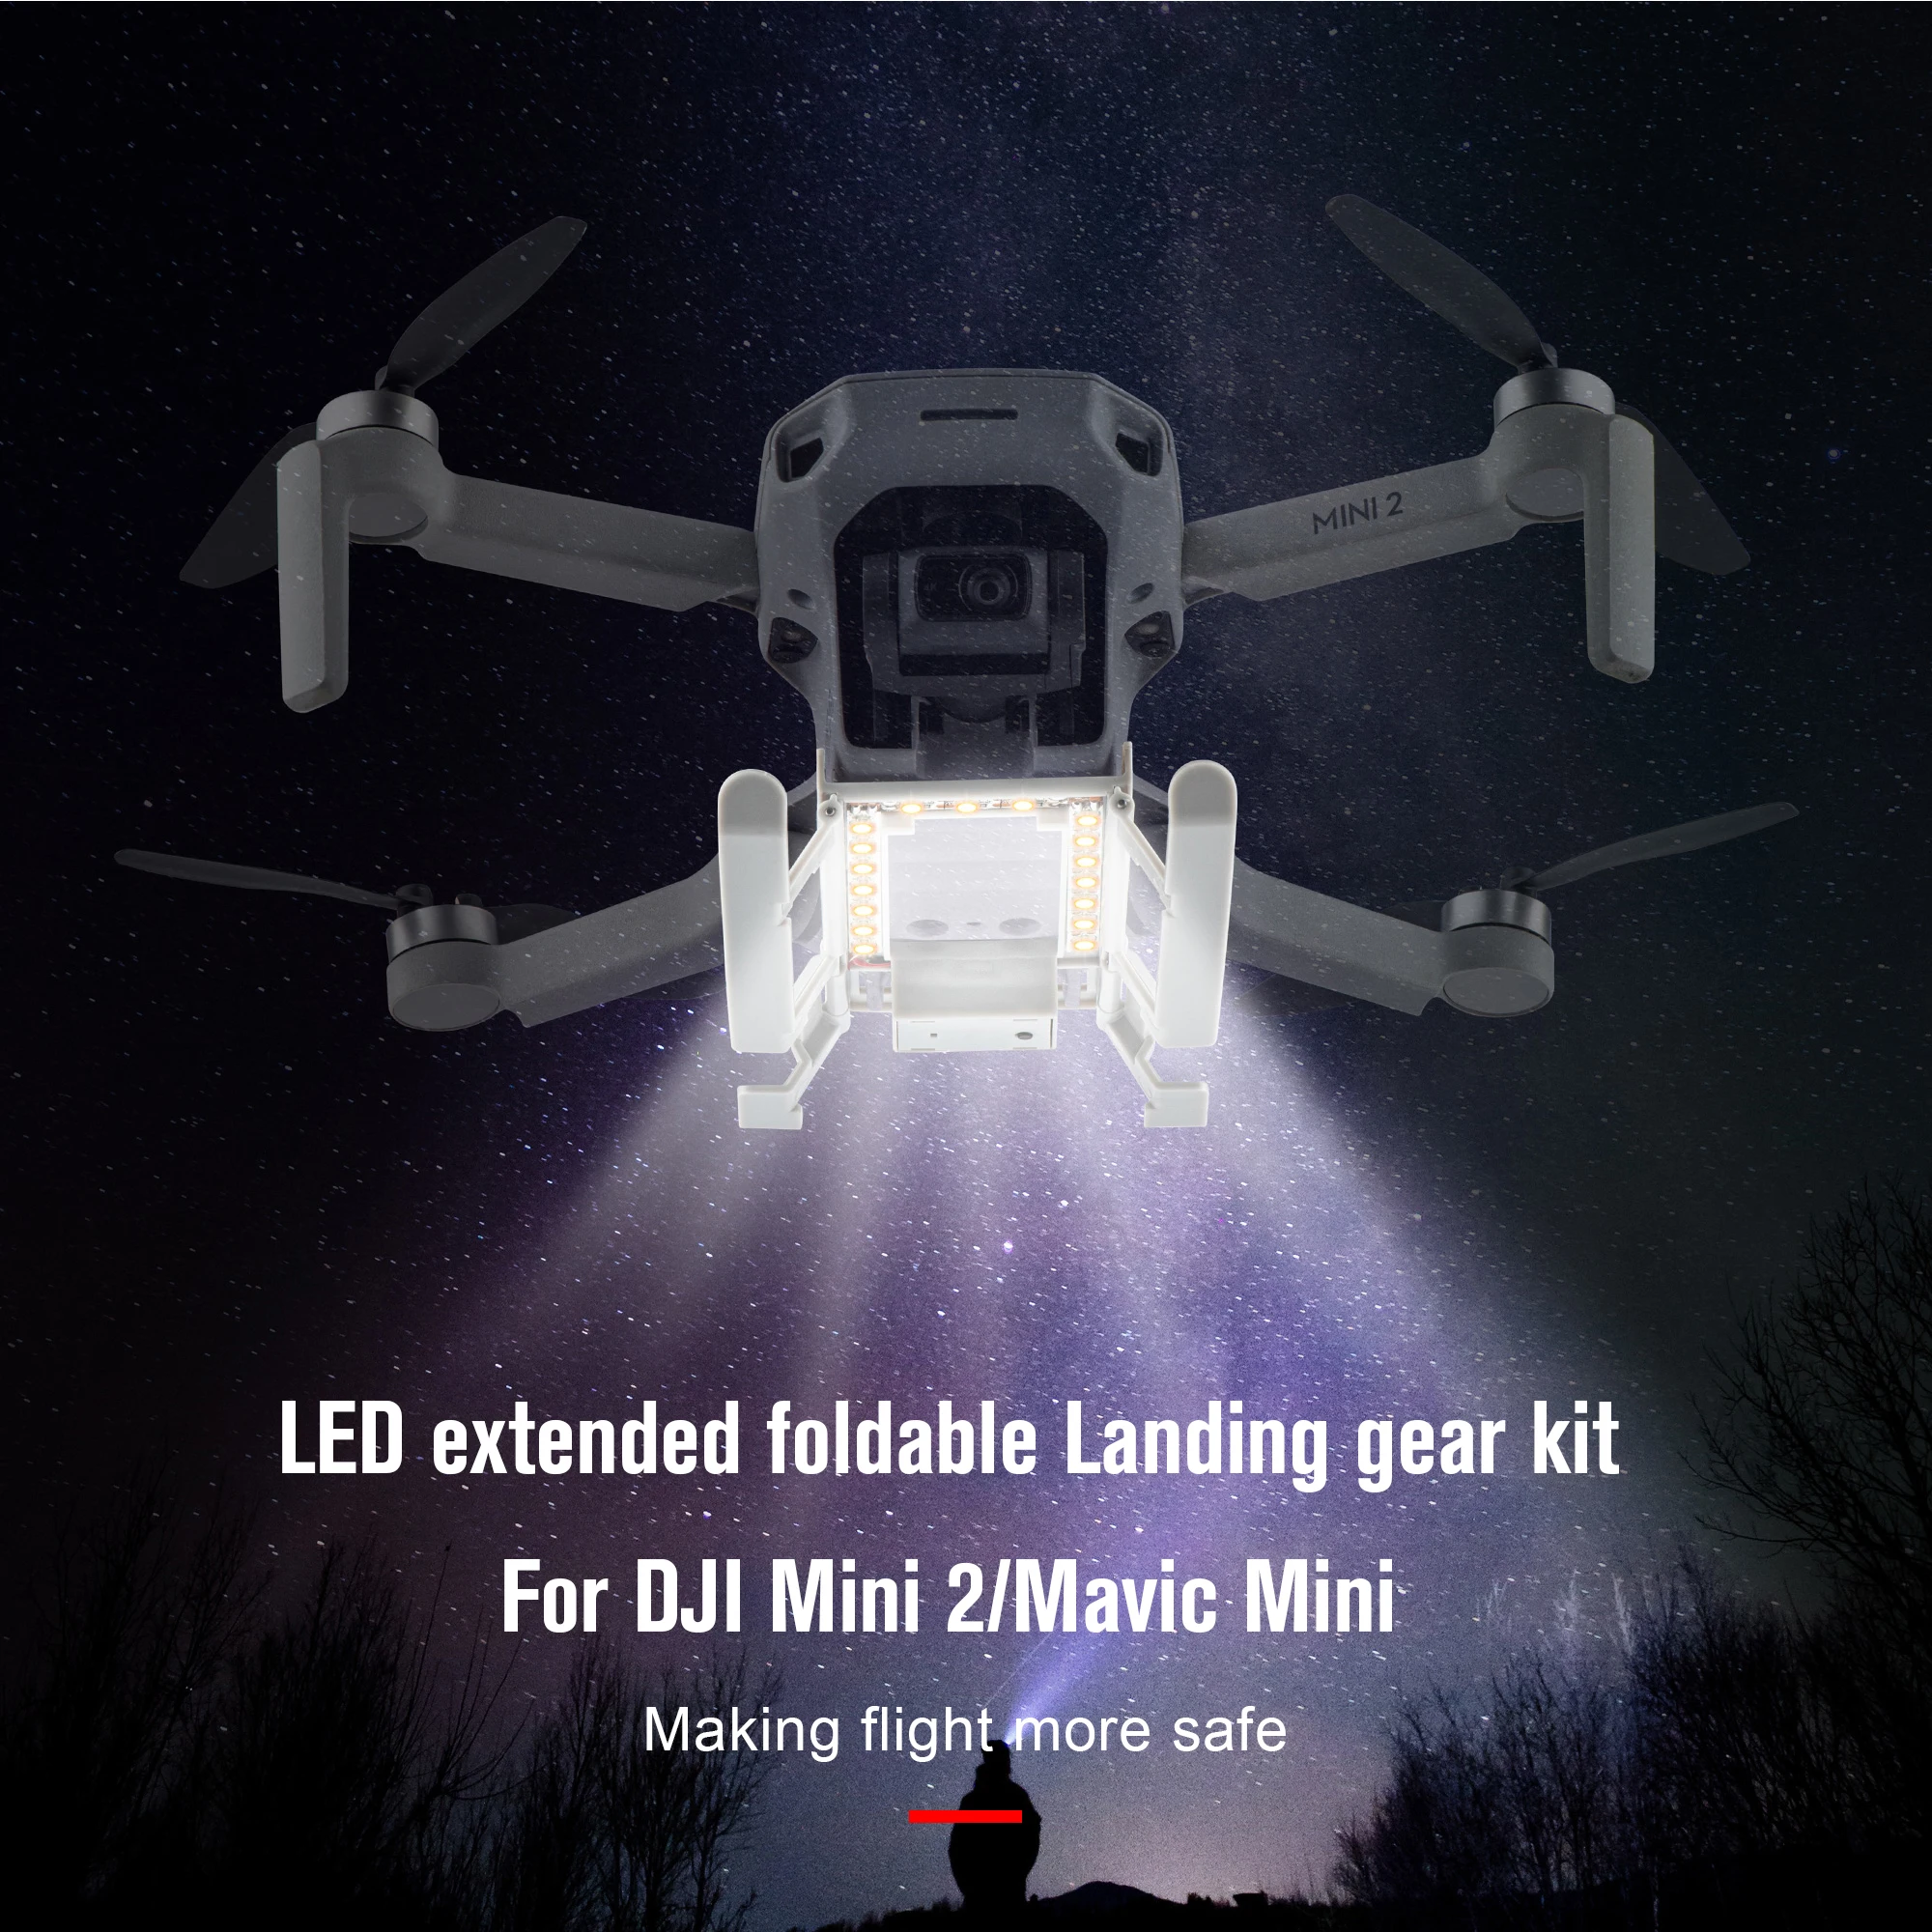 Foldable LED Light Landing Gear Extended Tripod For DJI Mavic Mini/Mini 2 Drone 